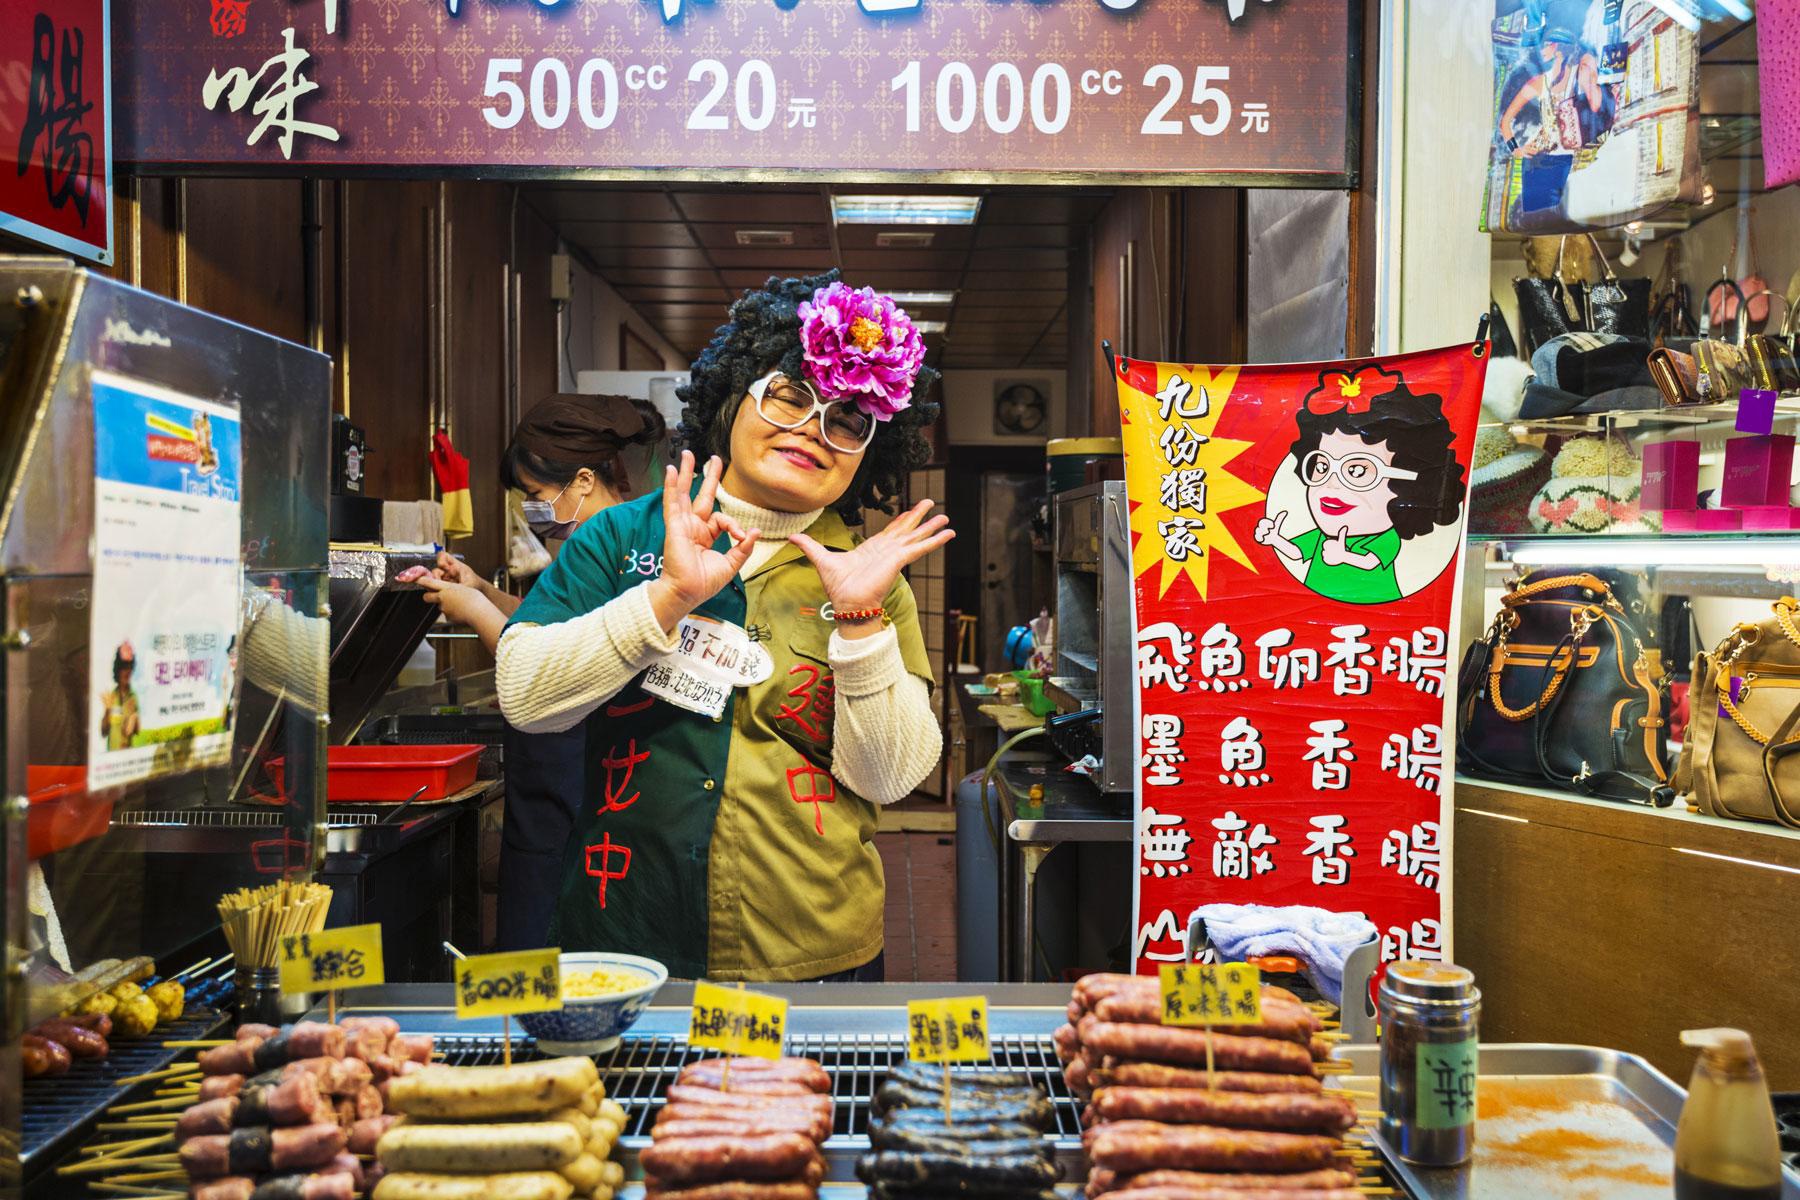 Khám phá Đài Loan qua những món ăn đường phố - Ảnh 1.